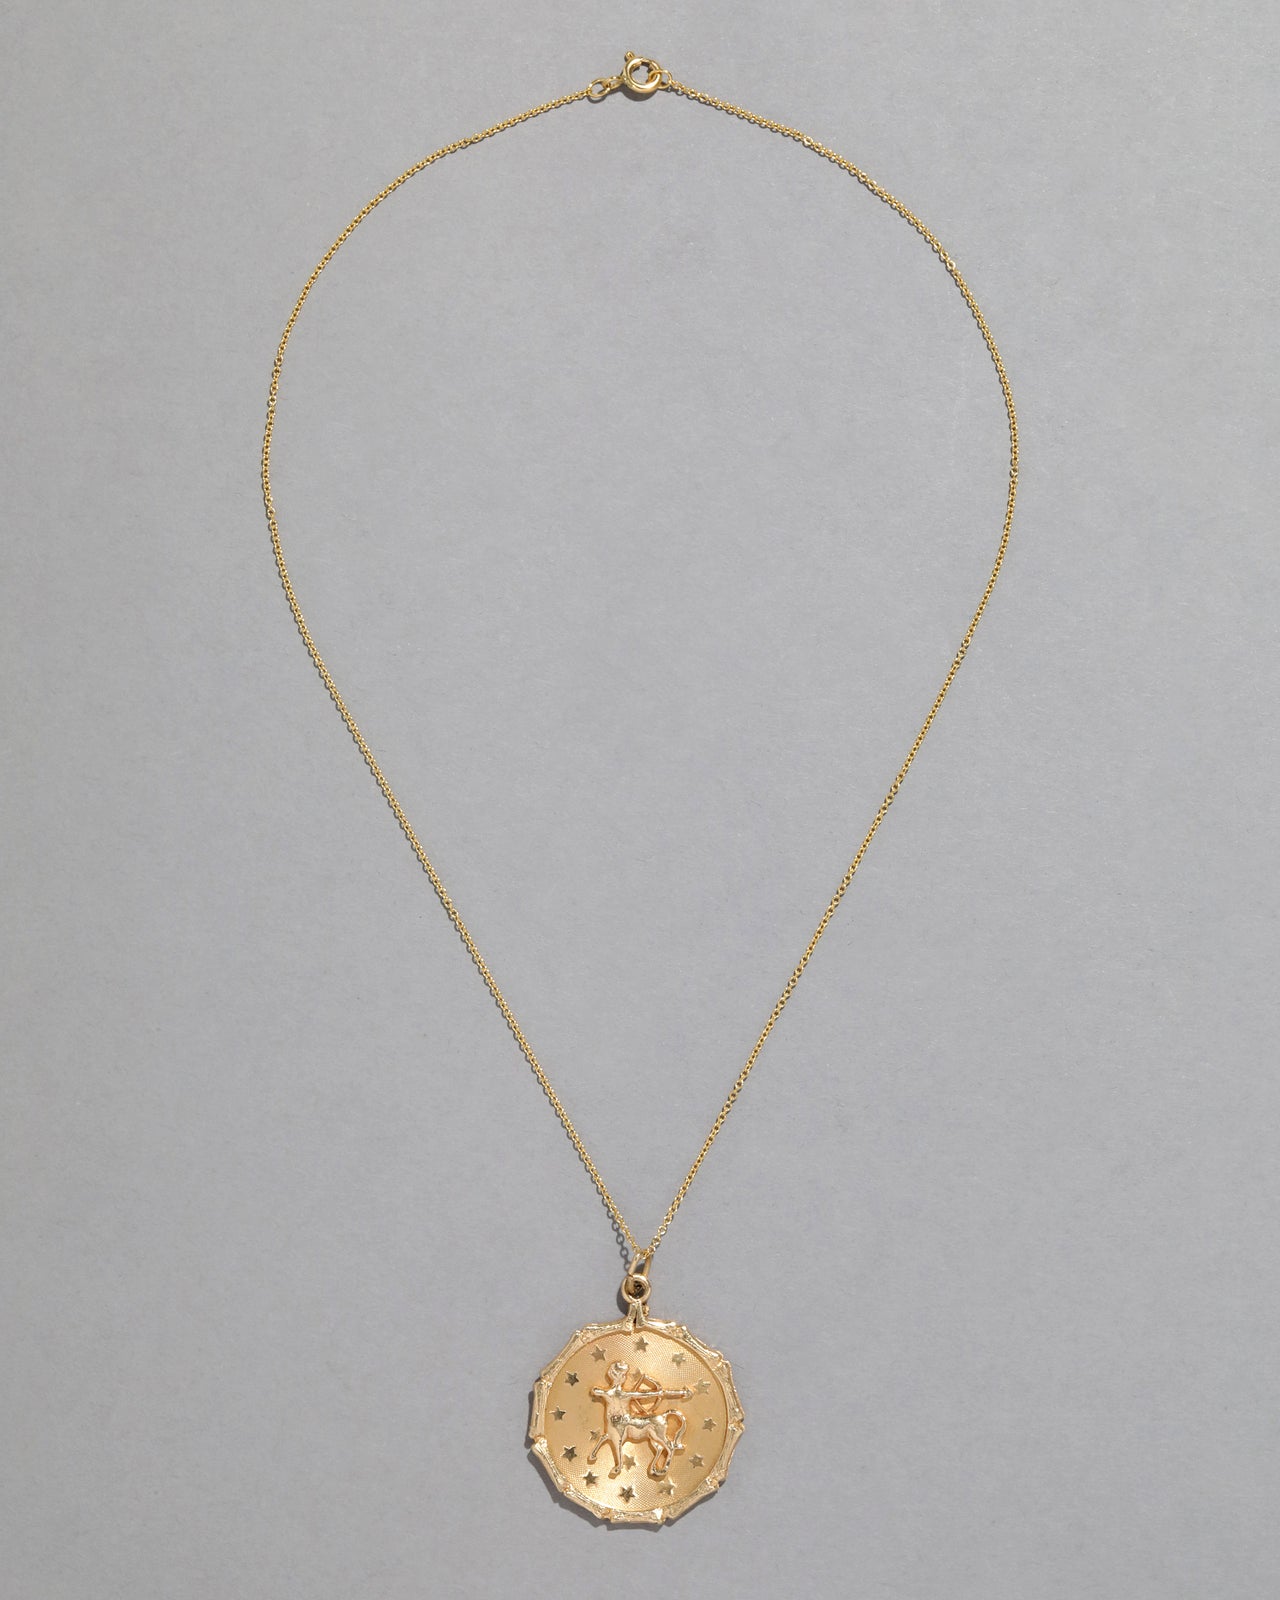 Vintage 1980s 14k Gold Sagittarius Pendant Necklace - Photo 2